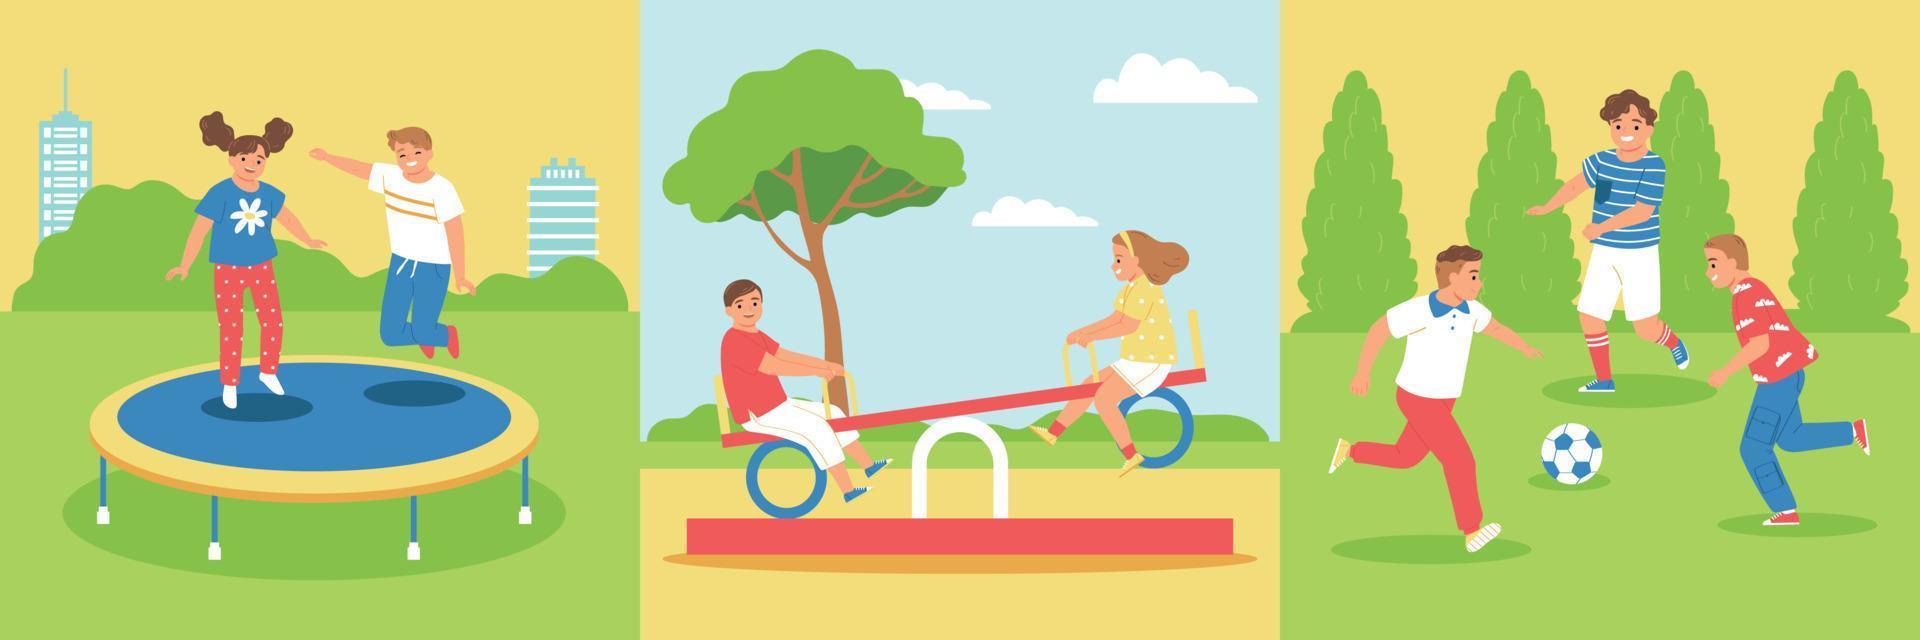 Children Playground Design Concept Set vector